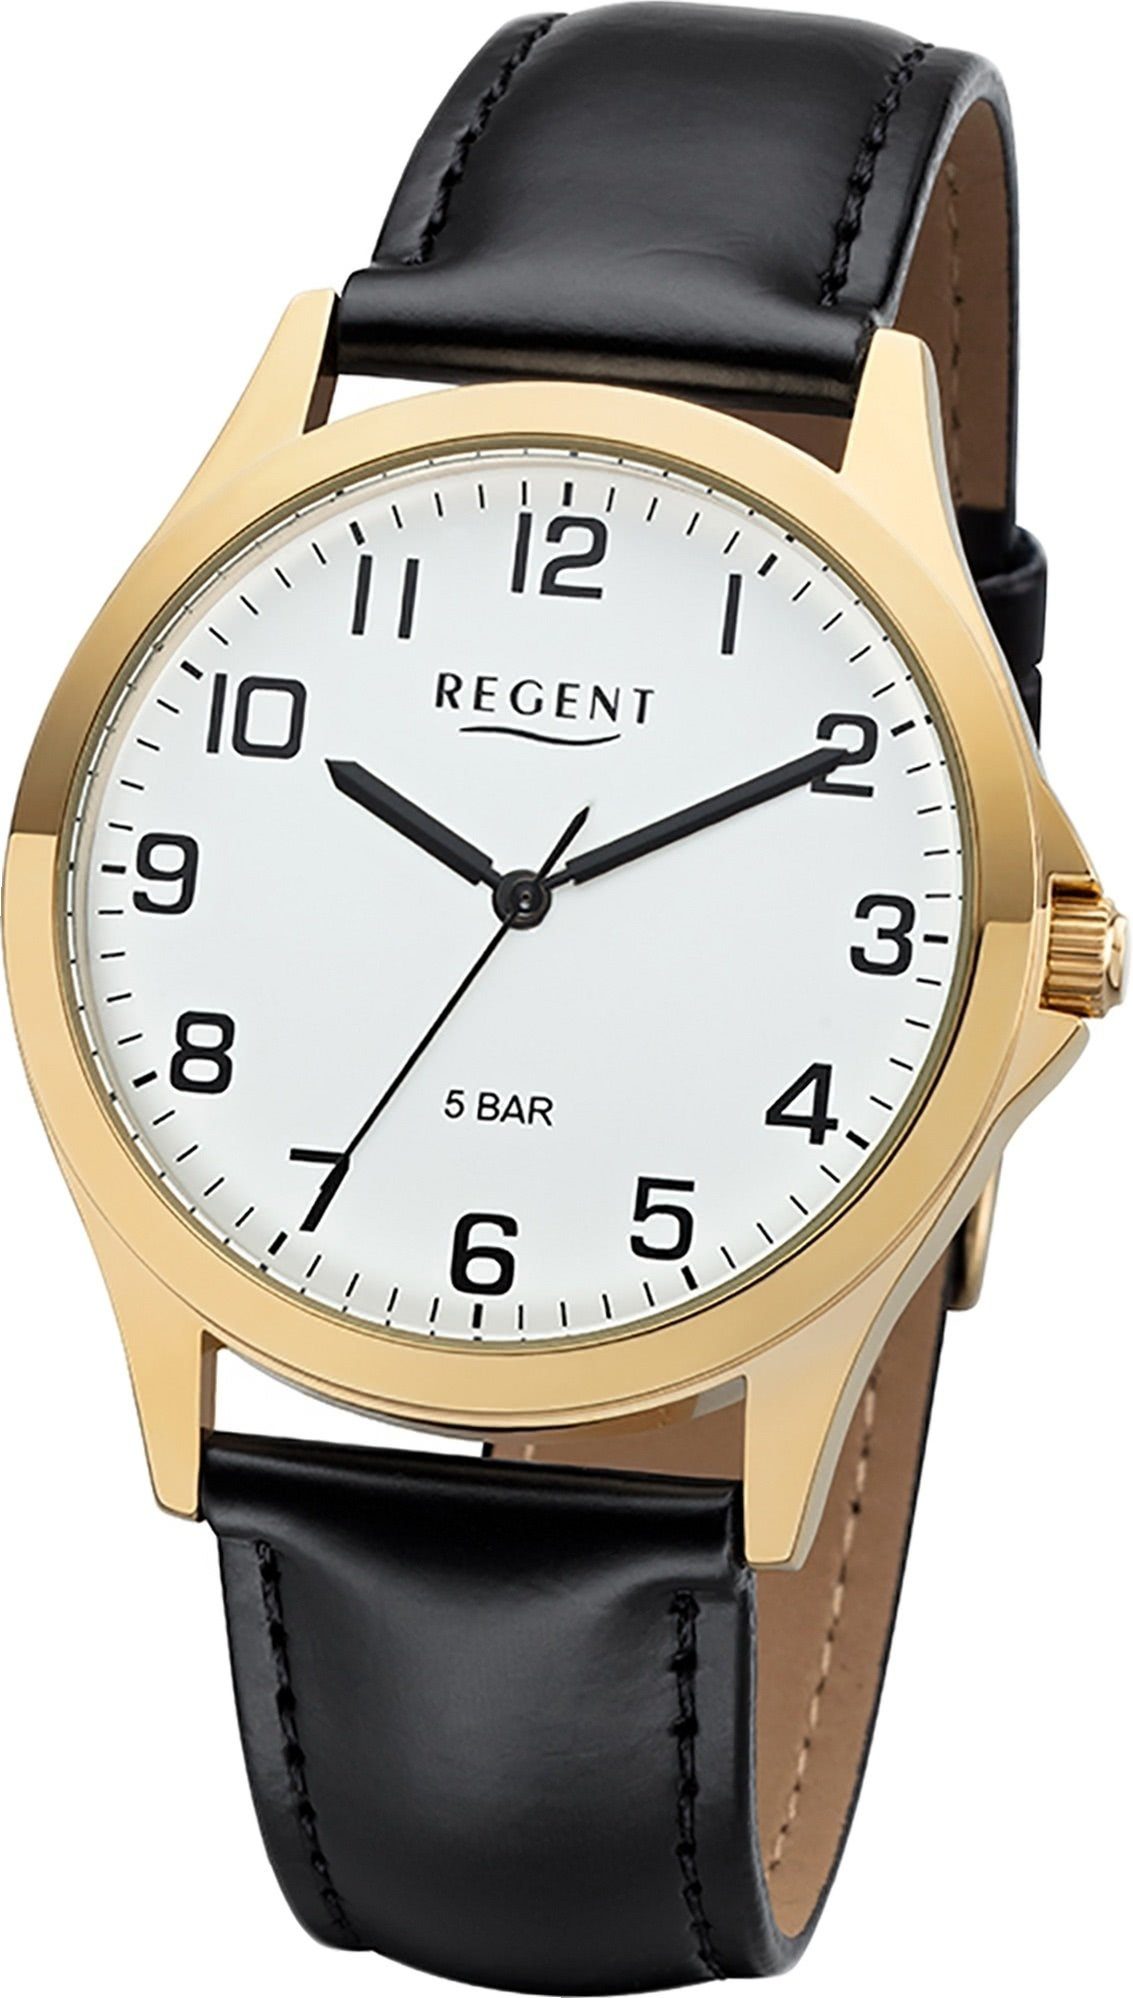 Uhr Regent Regent Leder 1103482 rundes 39mm) schwarz, Gehäuse, Lederarmband Herren Herrenuhr mittel Analog, Quarzuhr (ca.